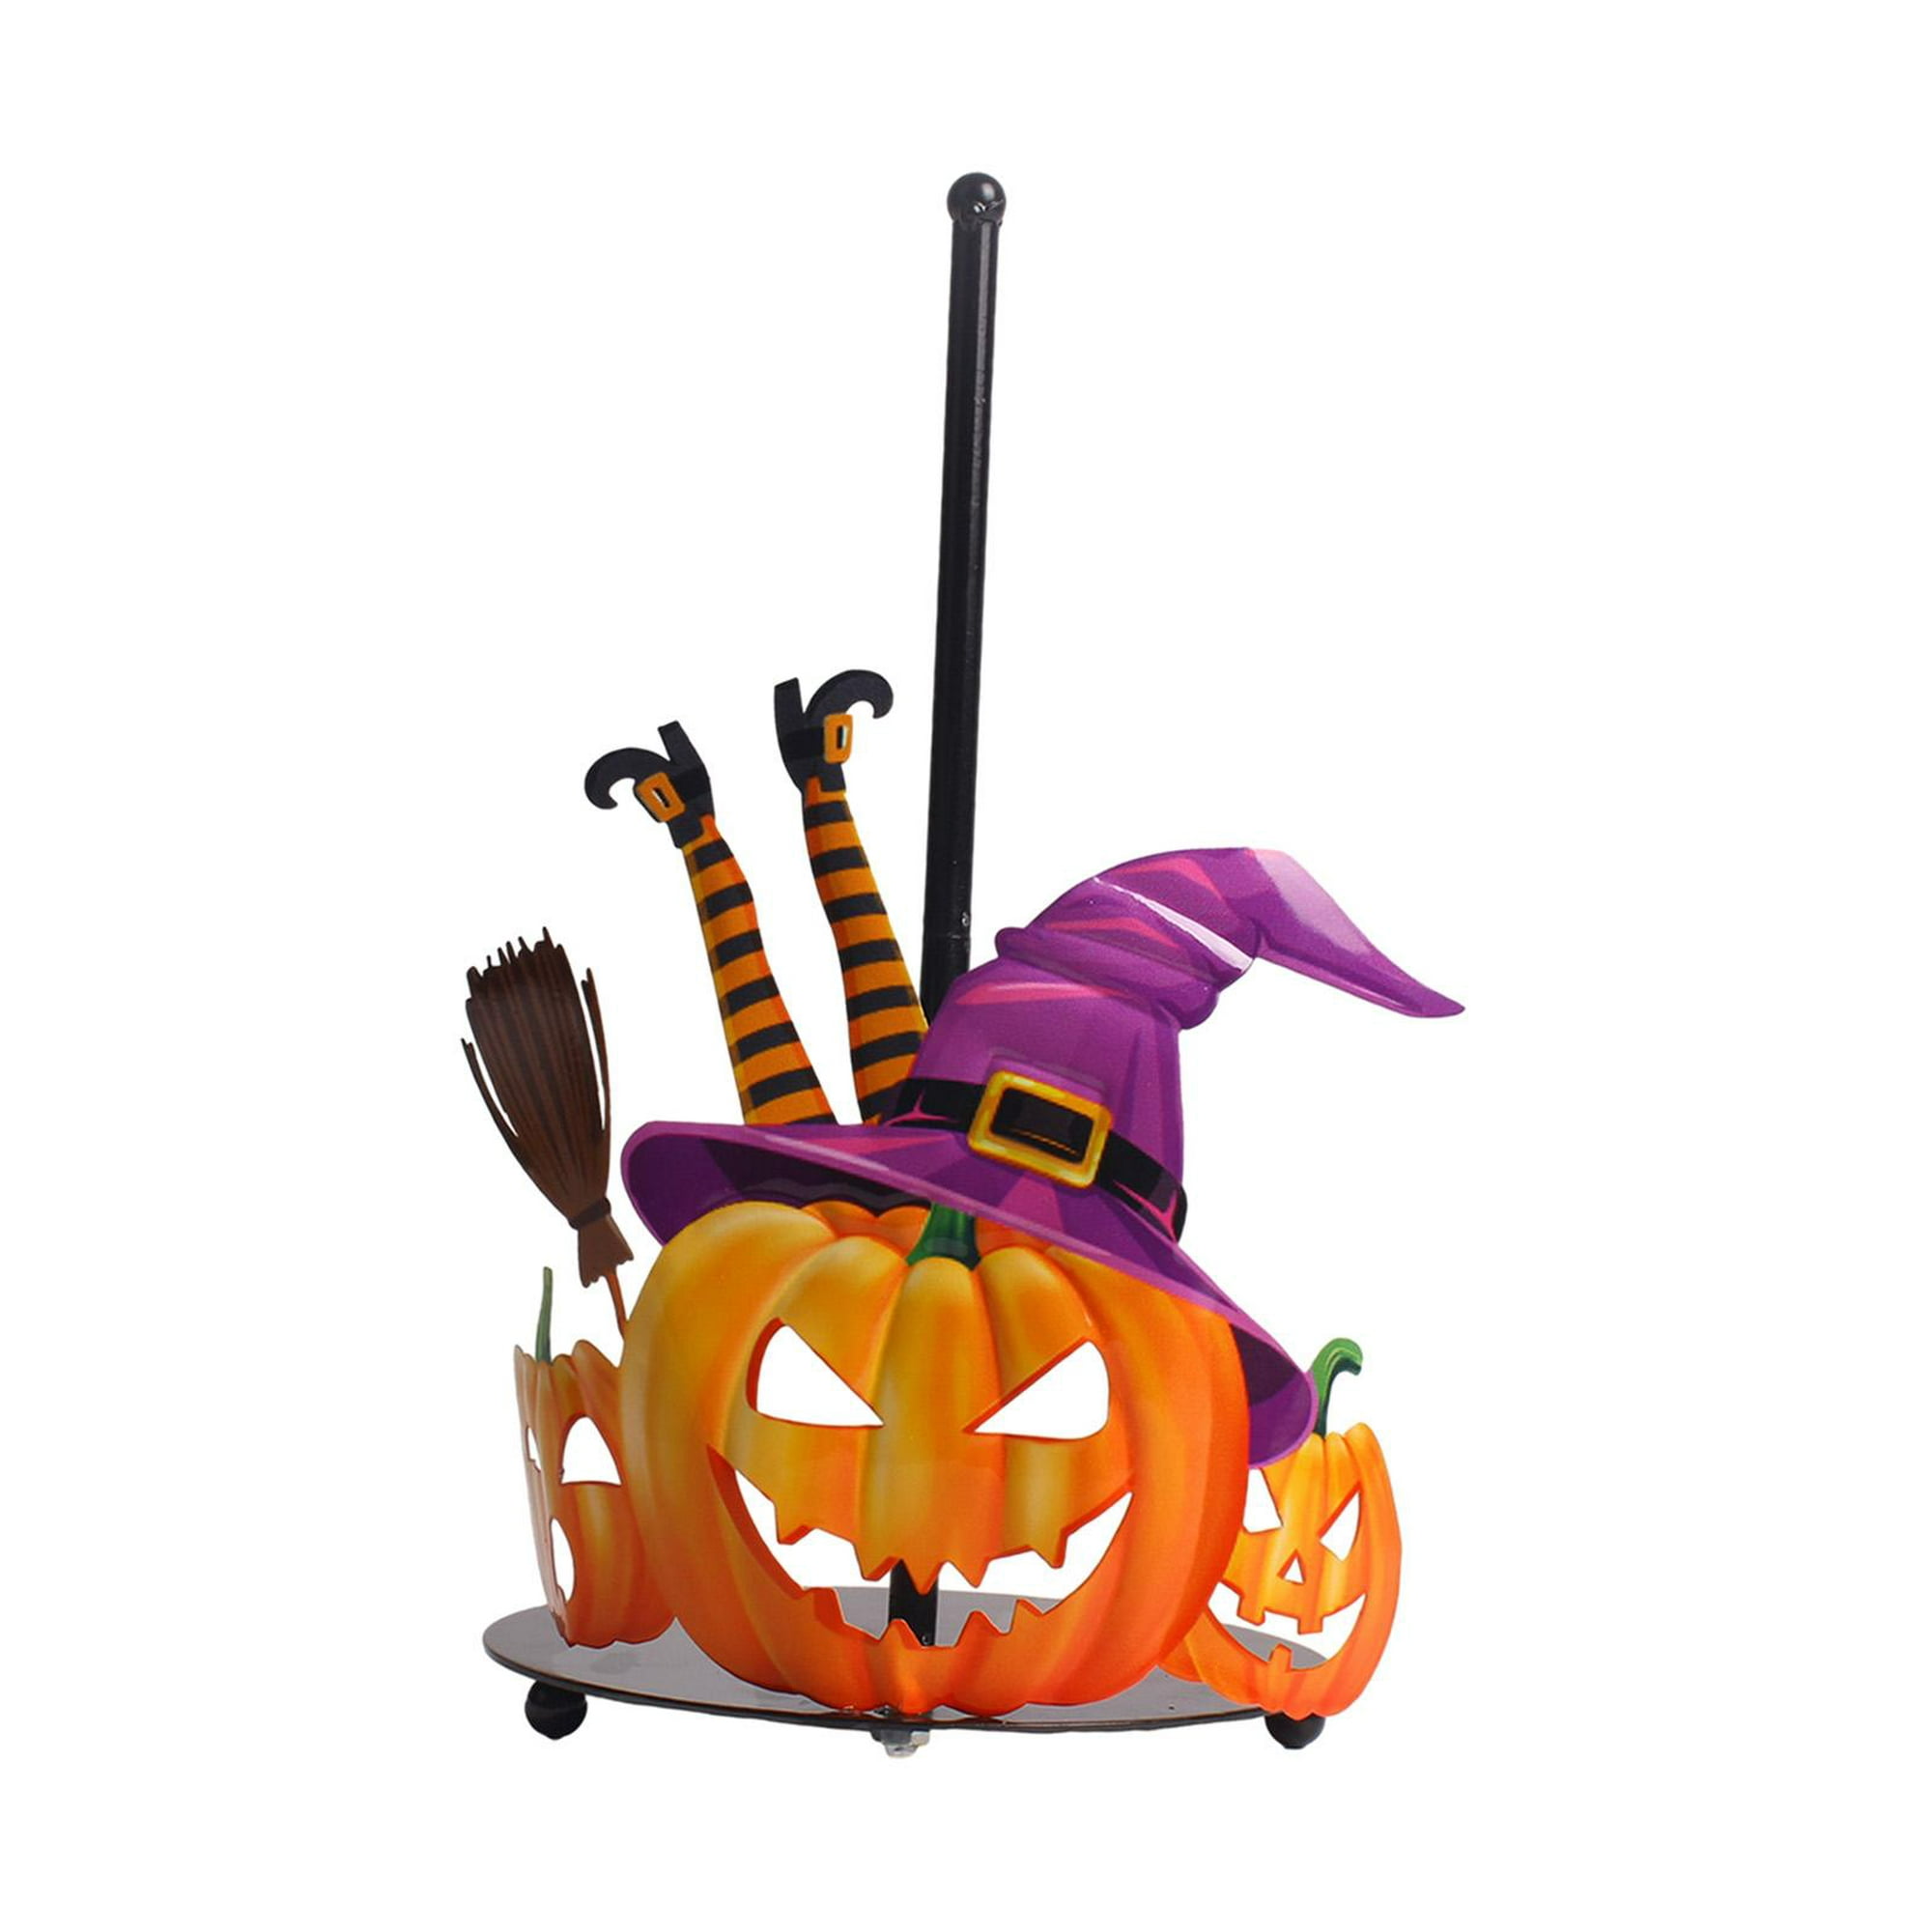  HIWX Toallas de mano de Halloween, toallas de cocina de  Halloween, diseño de esqueleto Howdy Preppy de Halloween, toallas de cocina  decorativas de Halloween, toallas de mano de esqueleto de Halloween